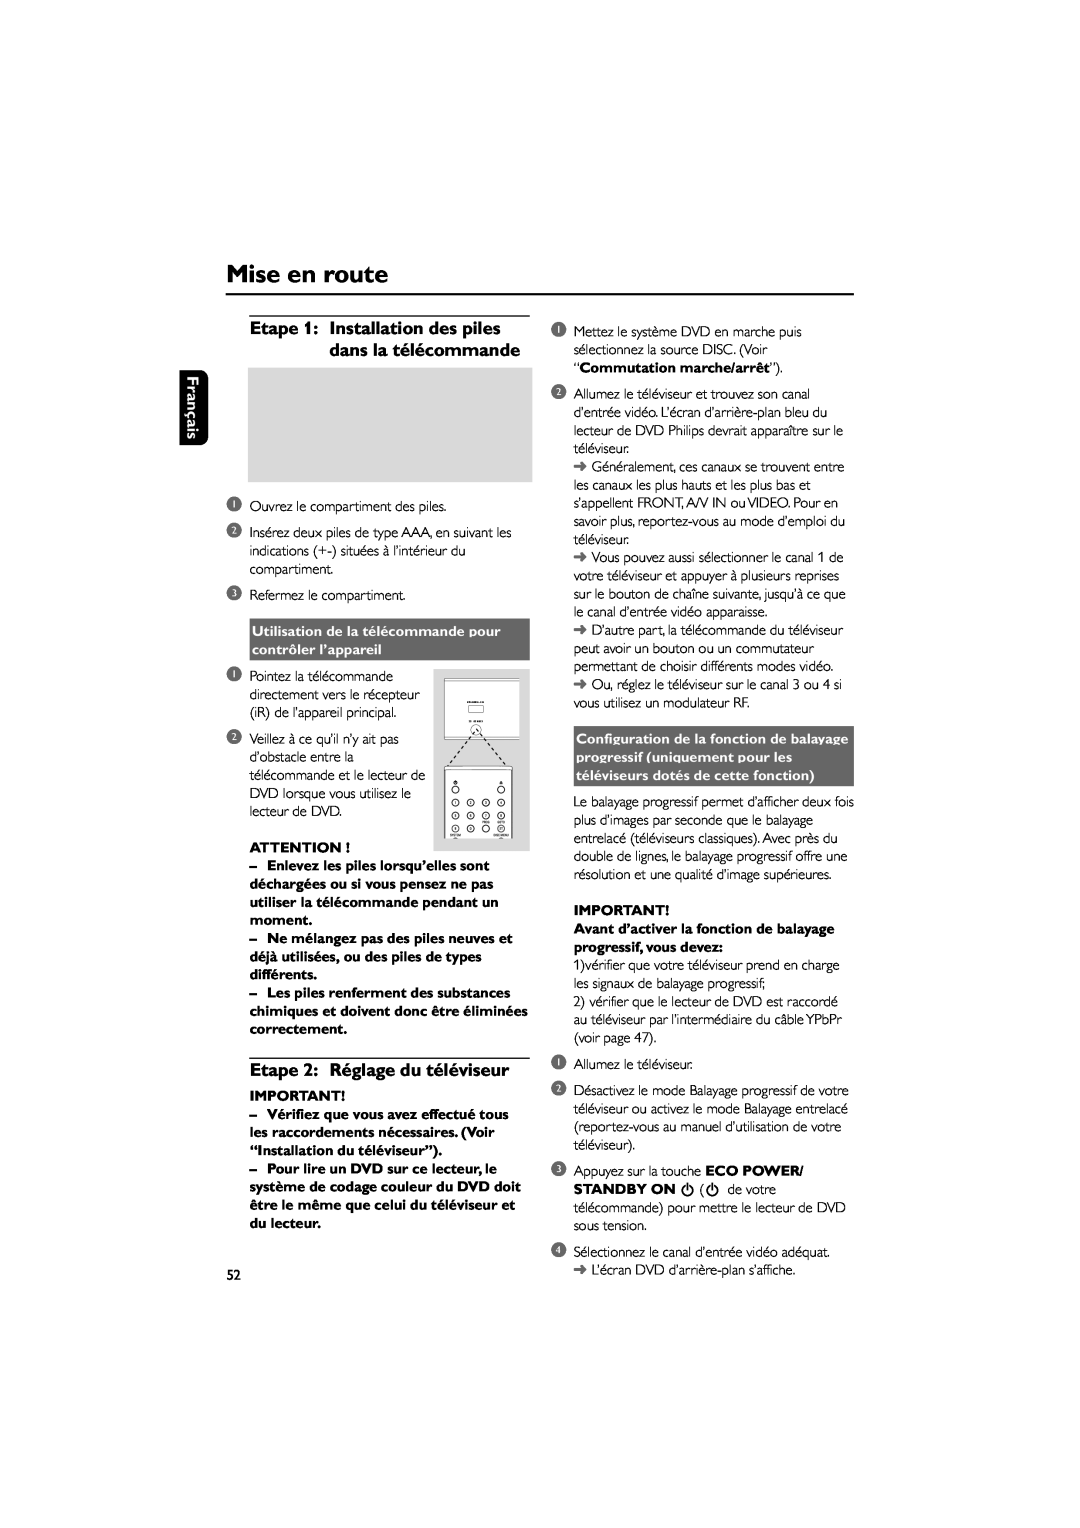 Philips MCD703 owner manual Mise en route, Etape 2 RŽglage du tŽlŽviseur, Franais, Utilisation de la tŽlŽcommande pour 